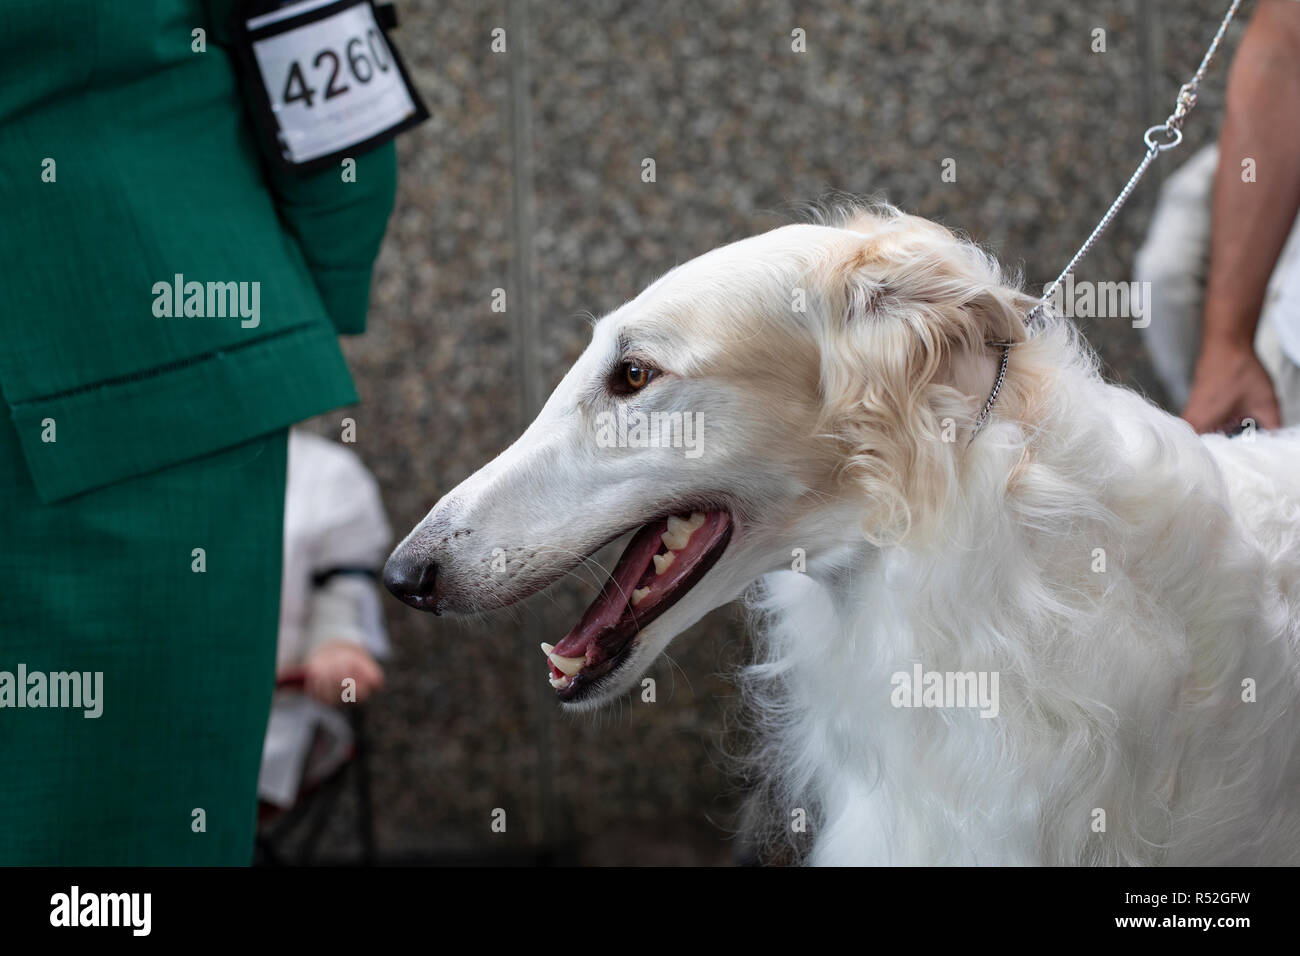 Blanc aux cheveux longs race Barzoï chien en laisse lors d'une exposition canine, montrant ses dents la langue et les gencives. Banque D'Images